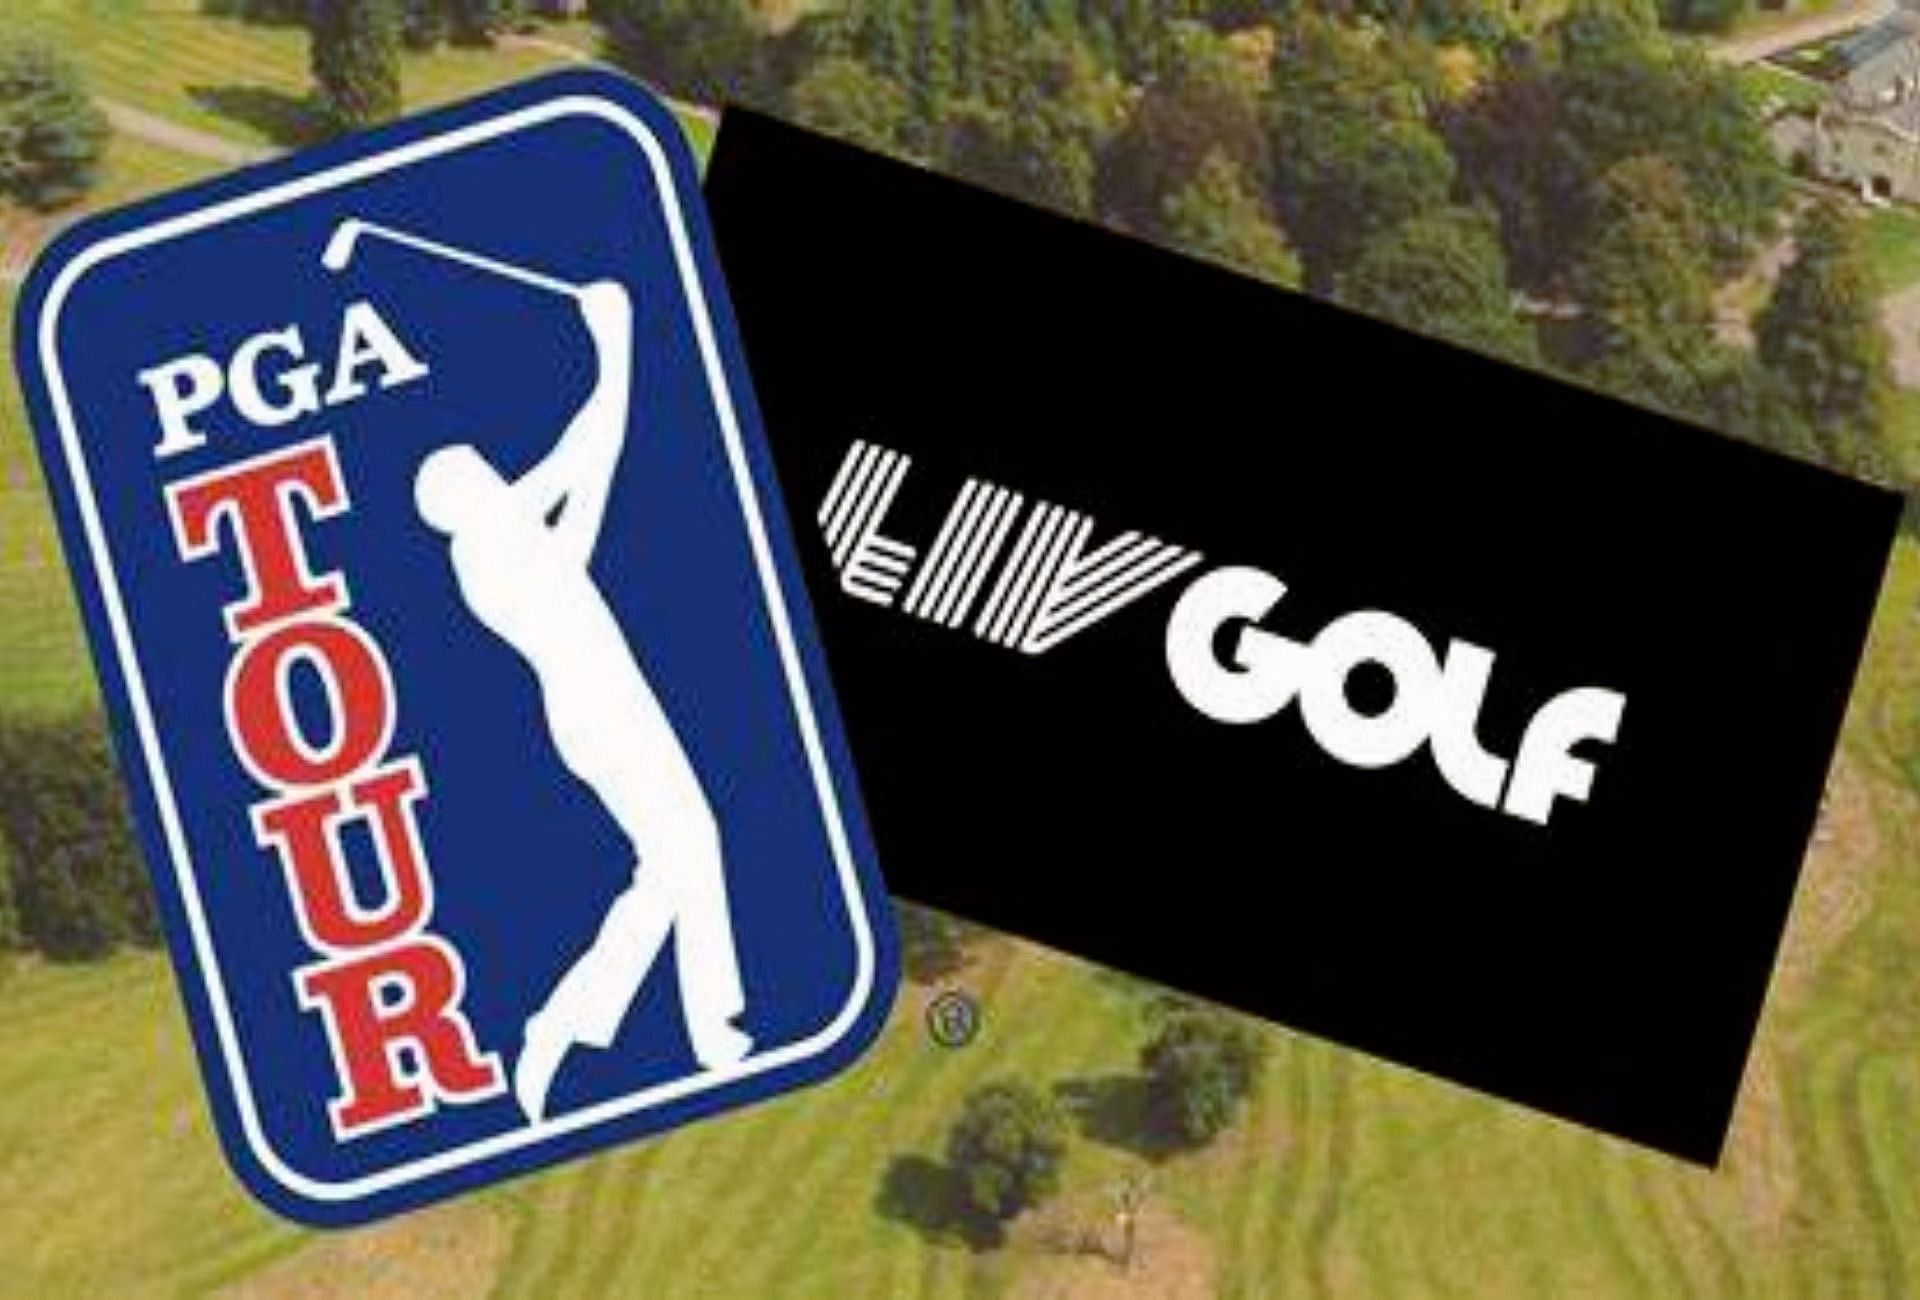 PGA Tour and LIV Golf logo